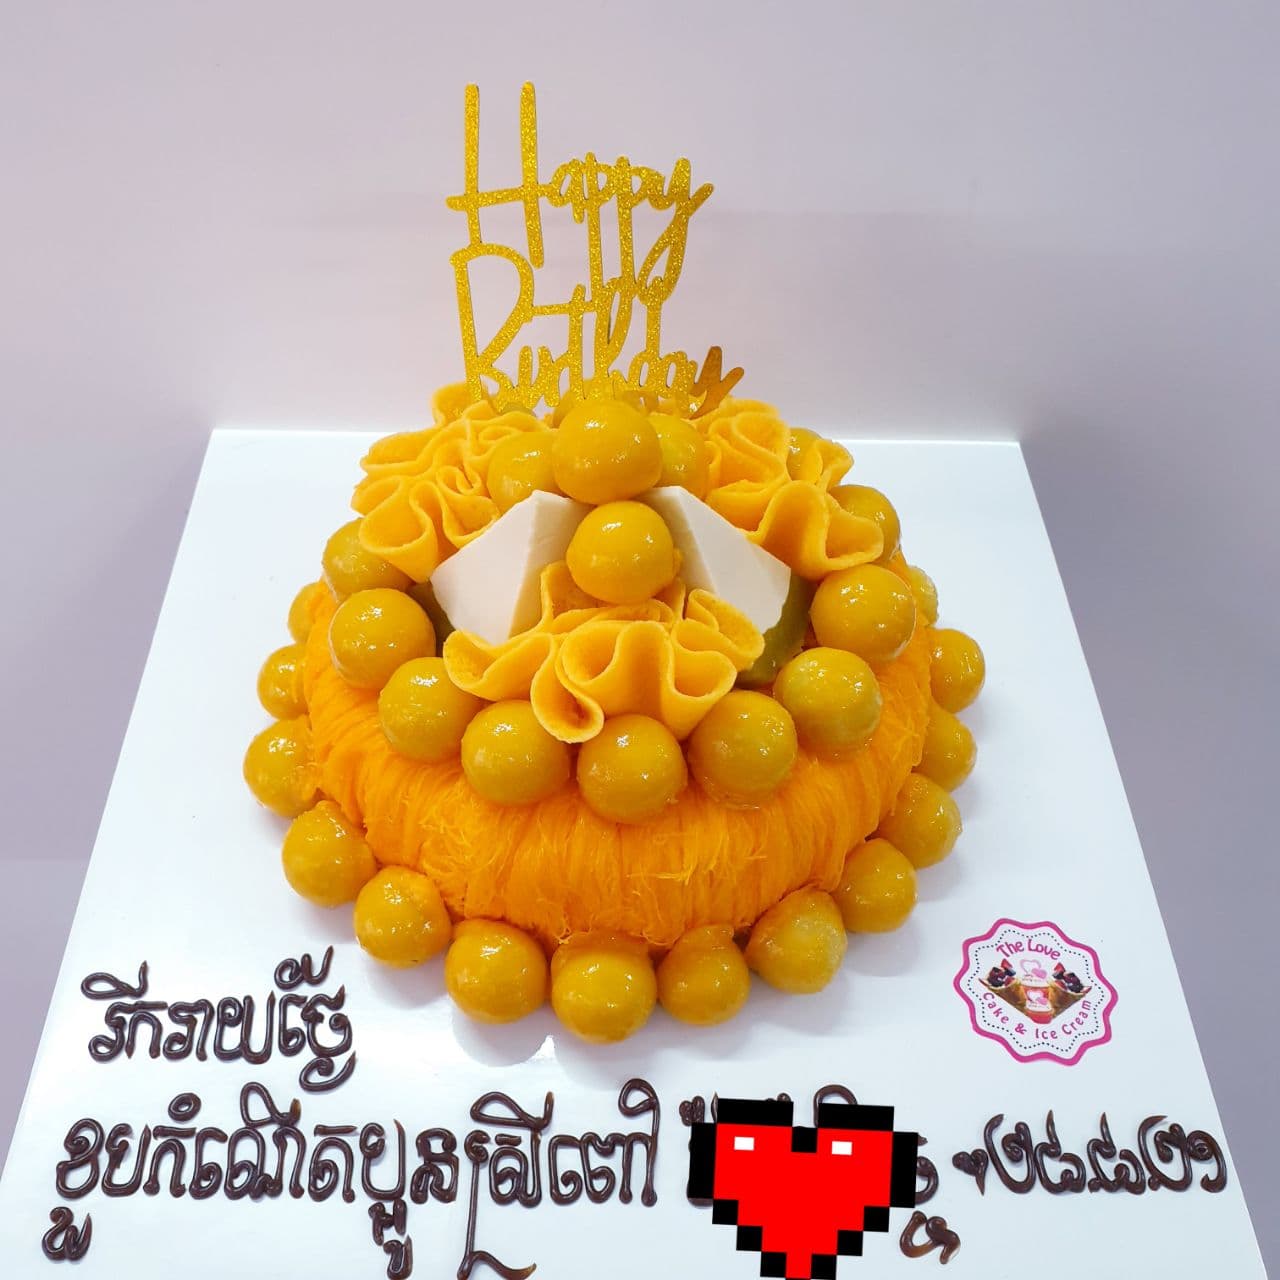 08.Round Golden Cake with Round Jackfruit